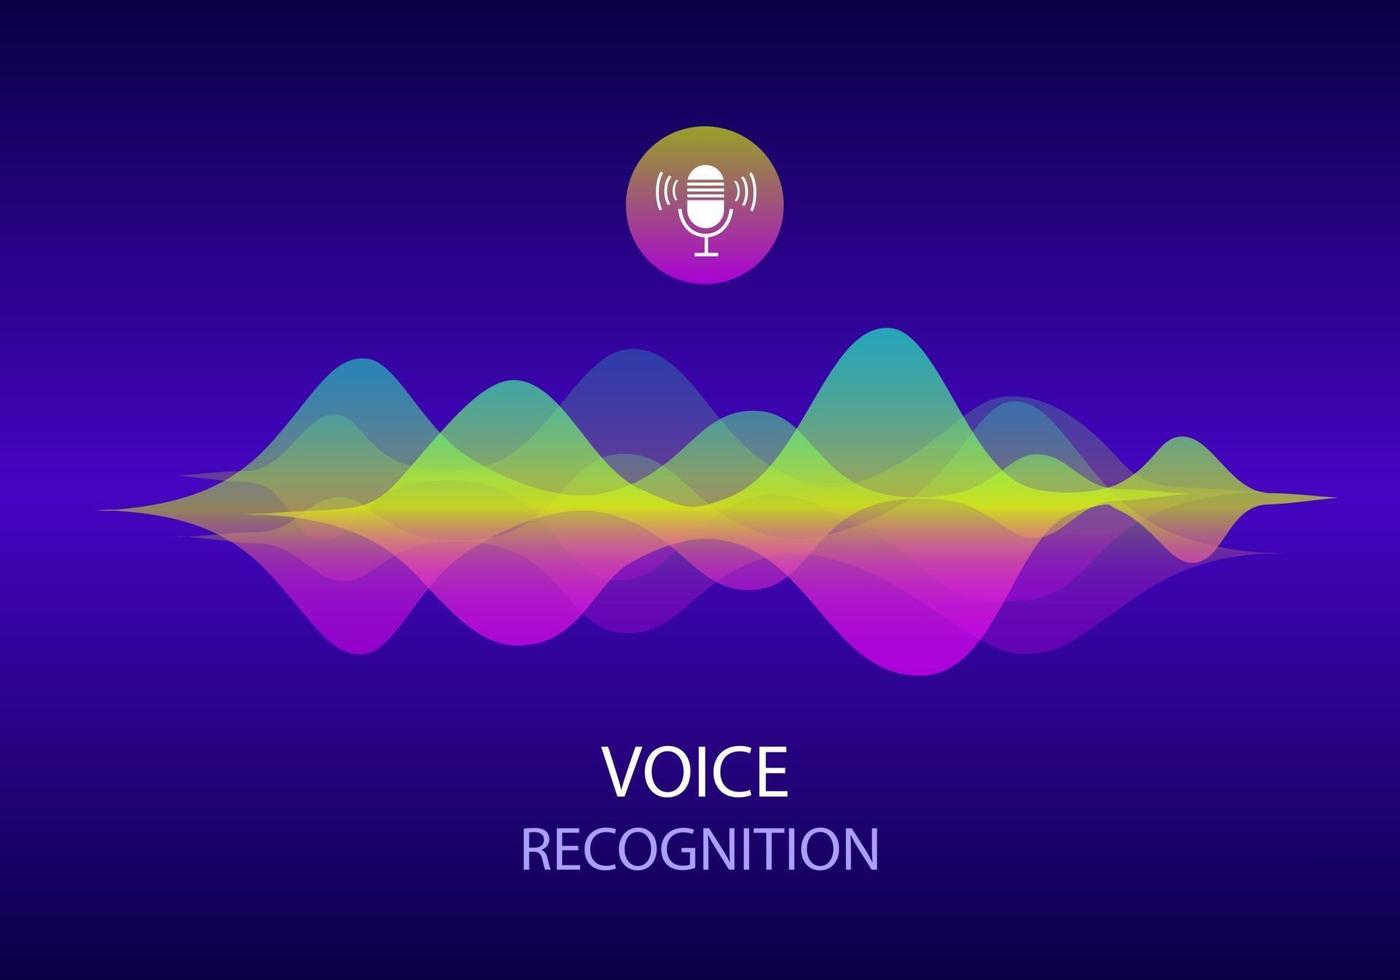 reconhecimento de voz e conceito de assistente pessoal. ilustração de onda sonora de vetor gradiente e microfone com controle de botão de voz brilhante. imitação de voz e tecnologias inteligentes.